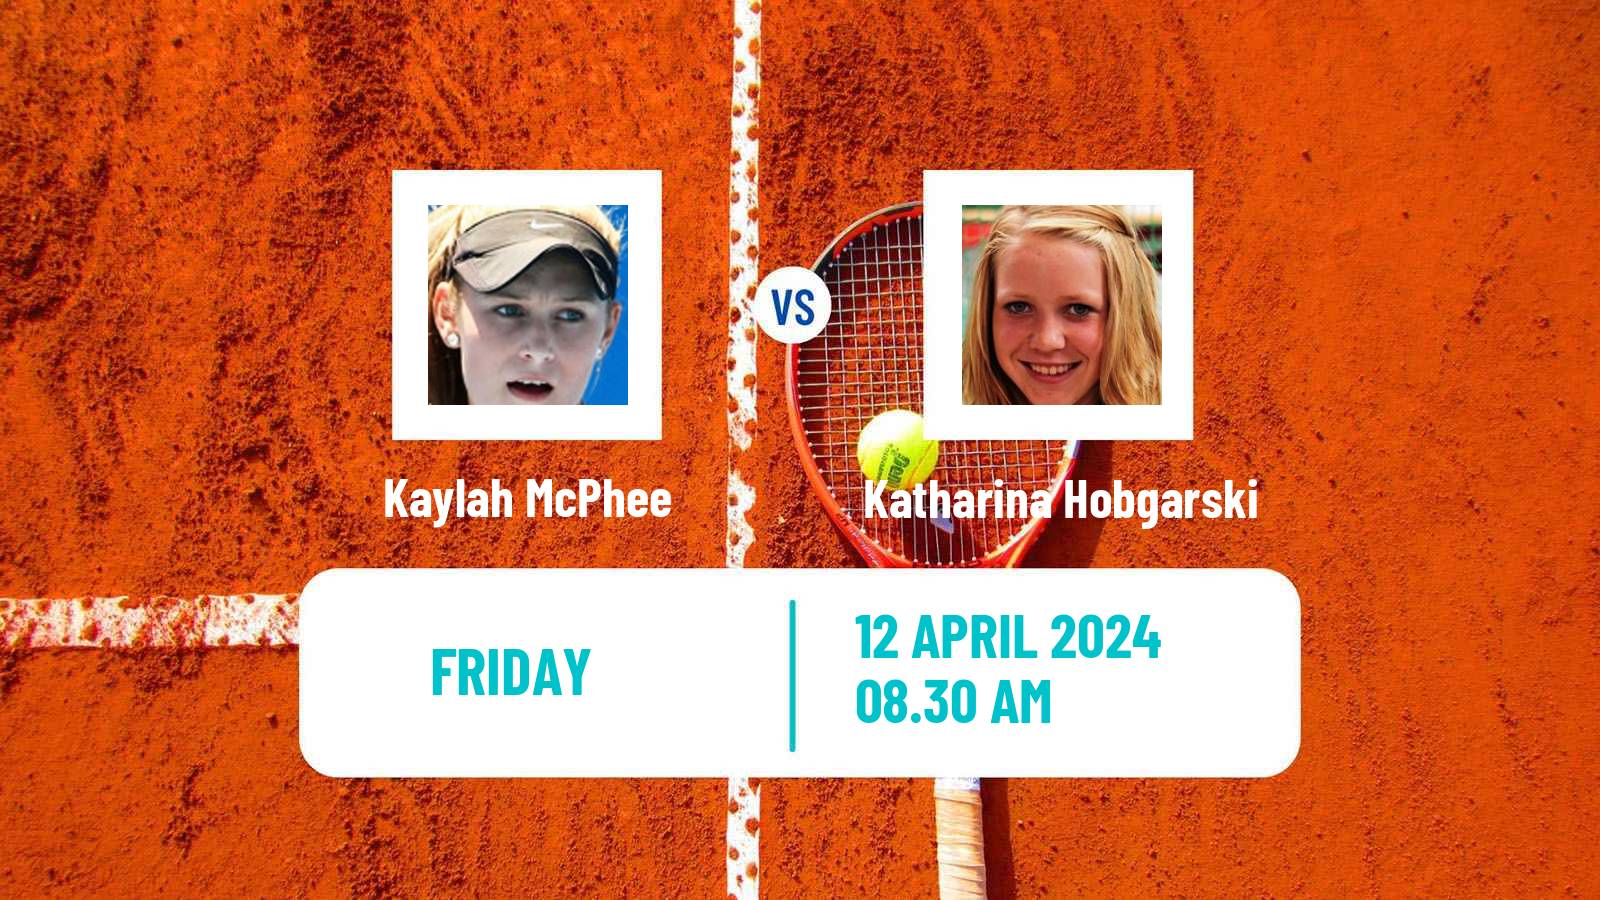 Tennis ITF W35 Hammamet 4 Women Kaylah McPhee - Katharina Hobgarski